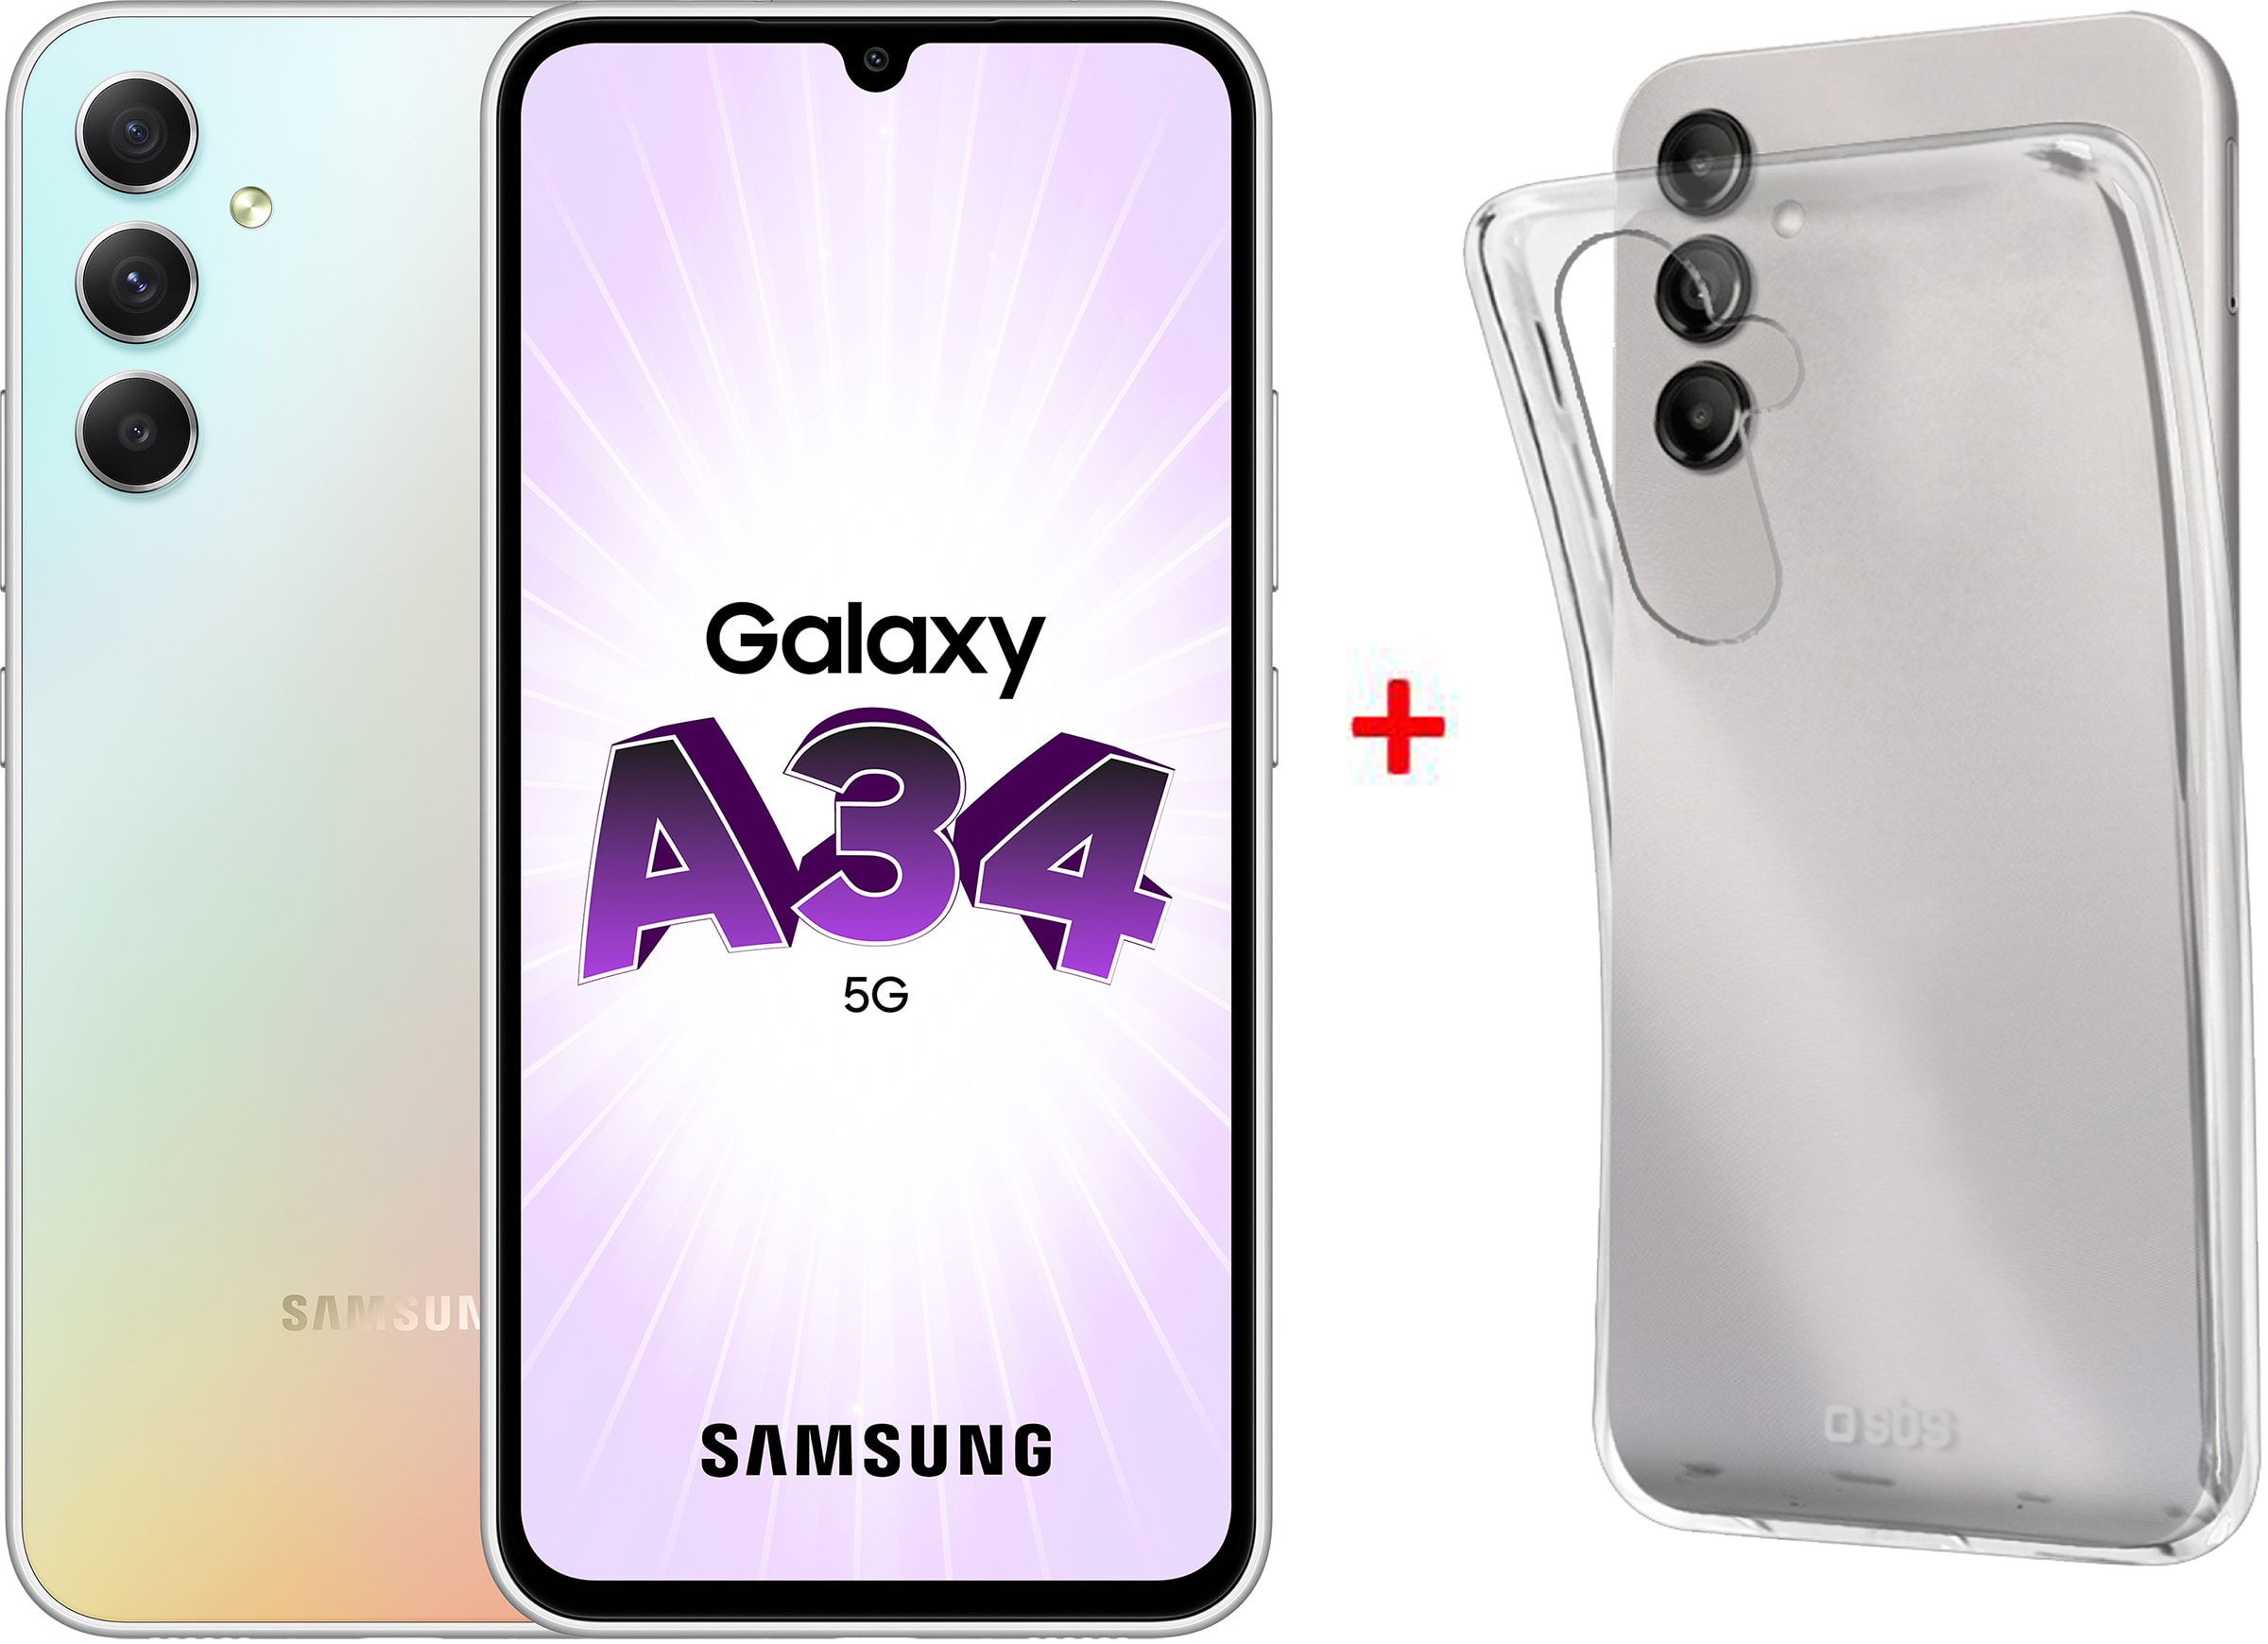 Téléphone portable Samsung Galaxy A34 5G - Version 6Go / 128Go